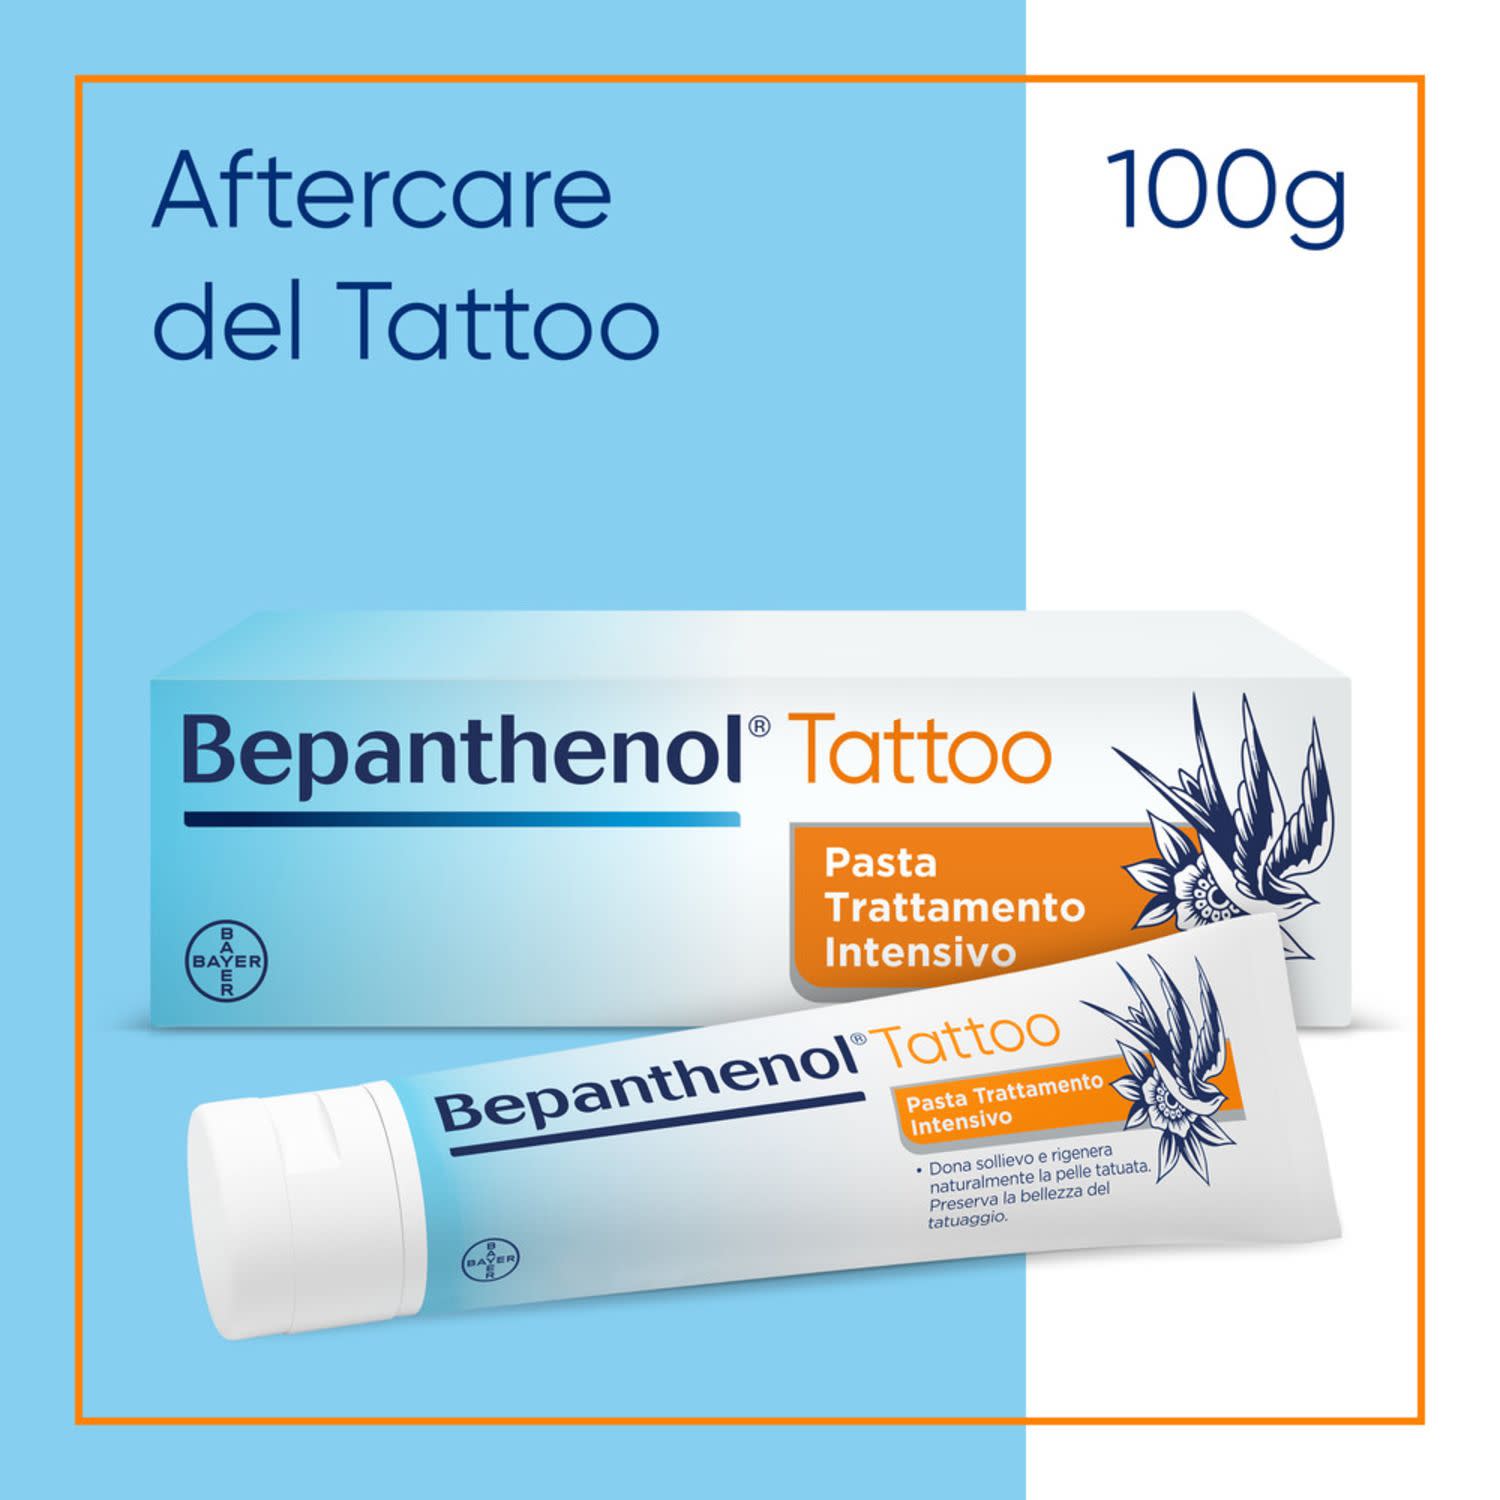 980928396 - Bepanthenol Tattoo Pasta Trattamento Intensivo Cura Tatuaggio Idratante e Protettiva 100g - 4707913_3.jpg